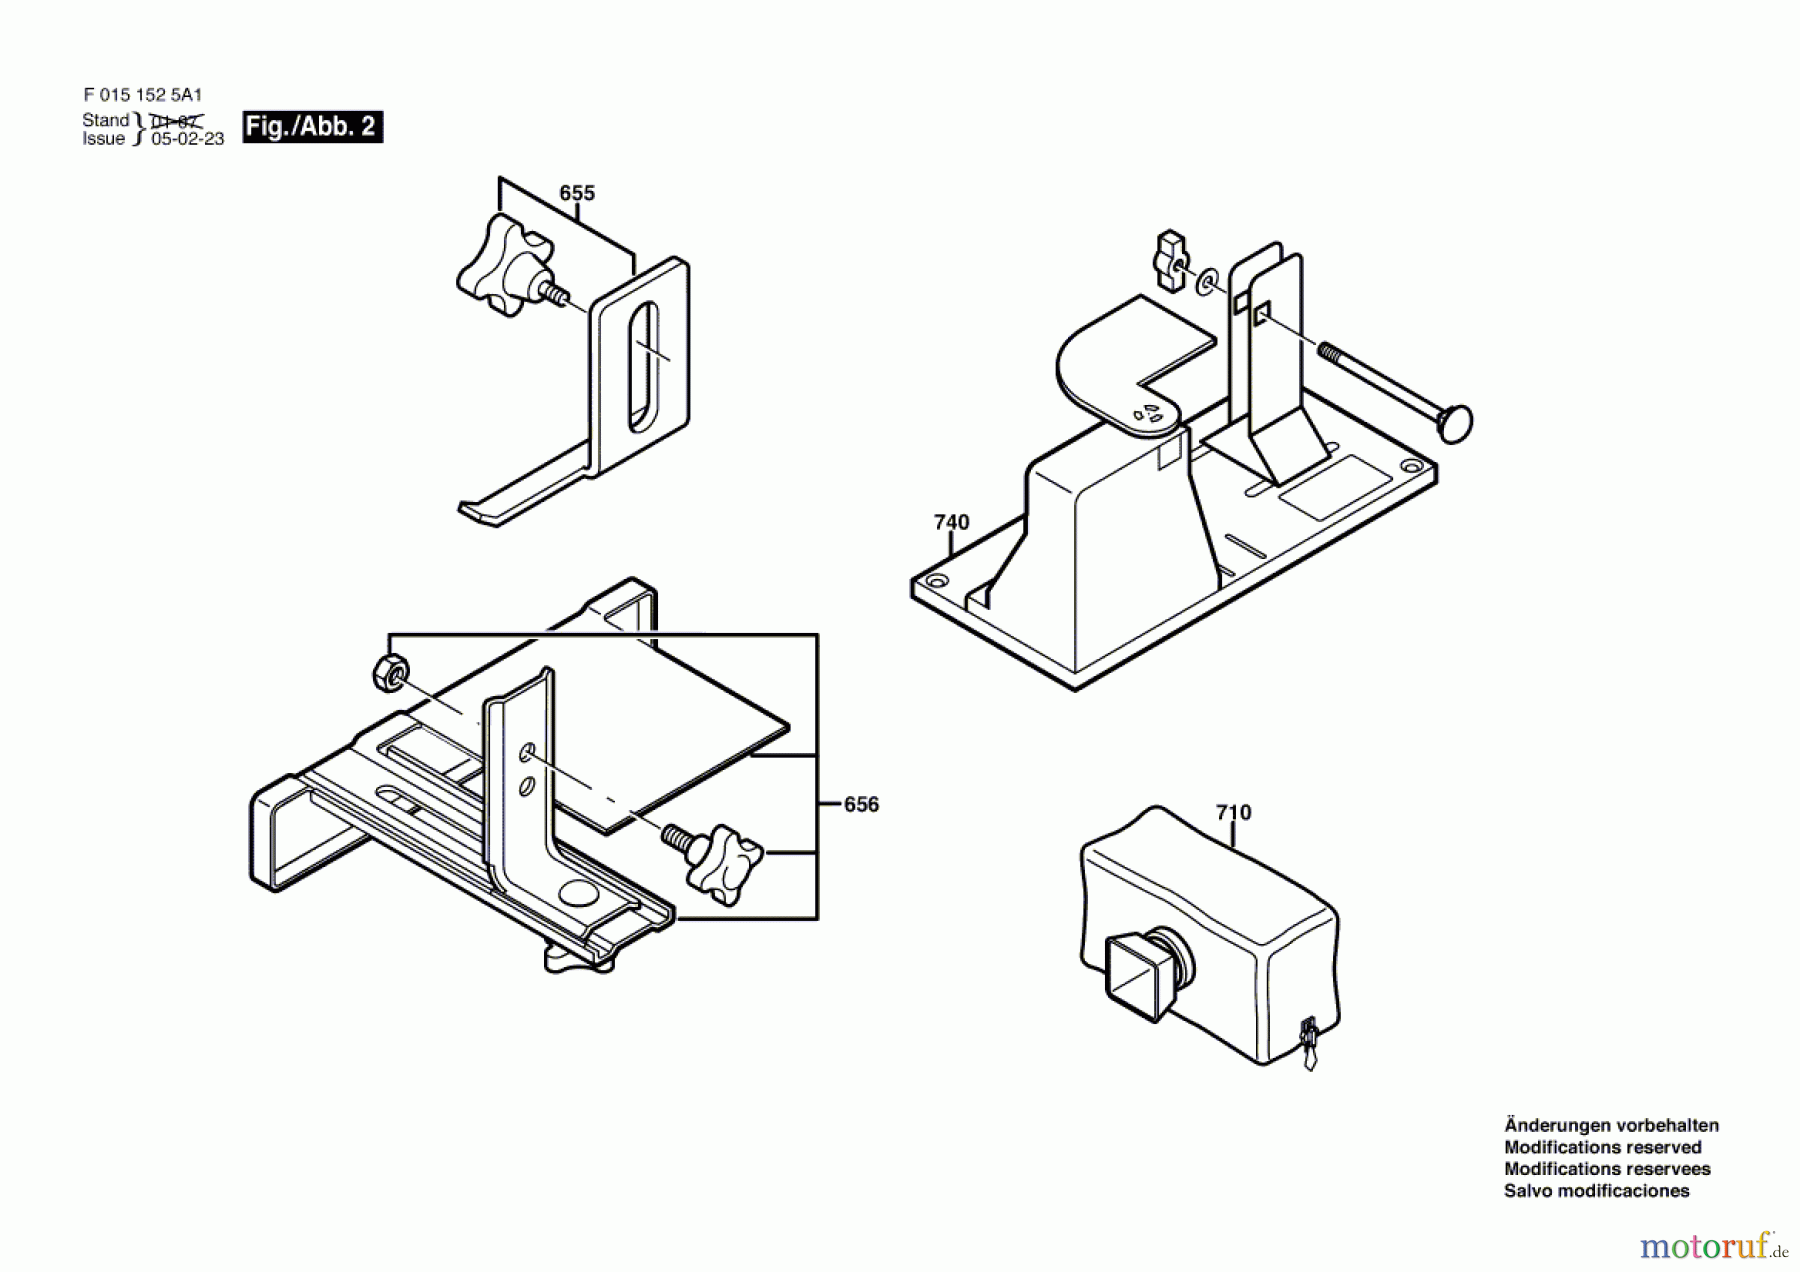  Bosch Werkzeug Handhobel 1525 Seite 2